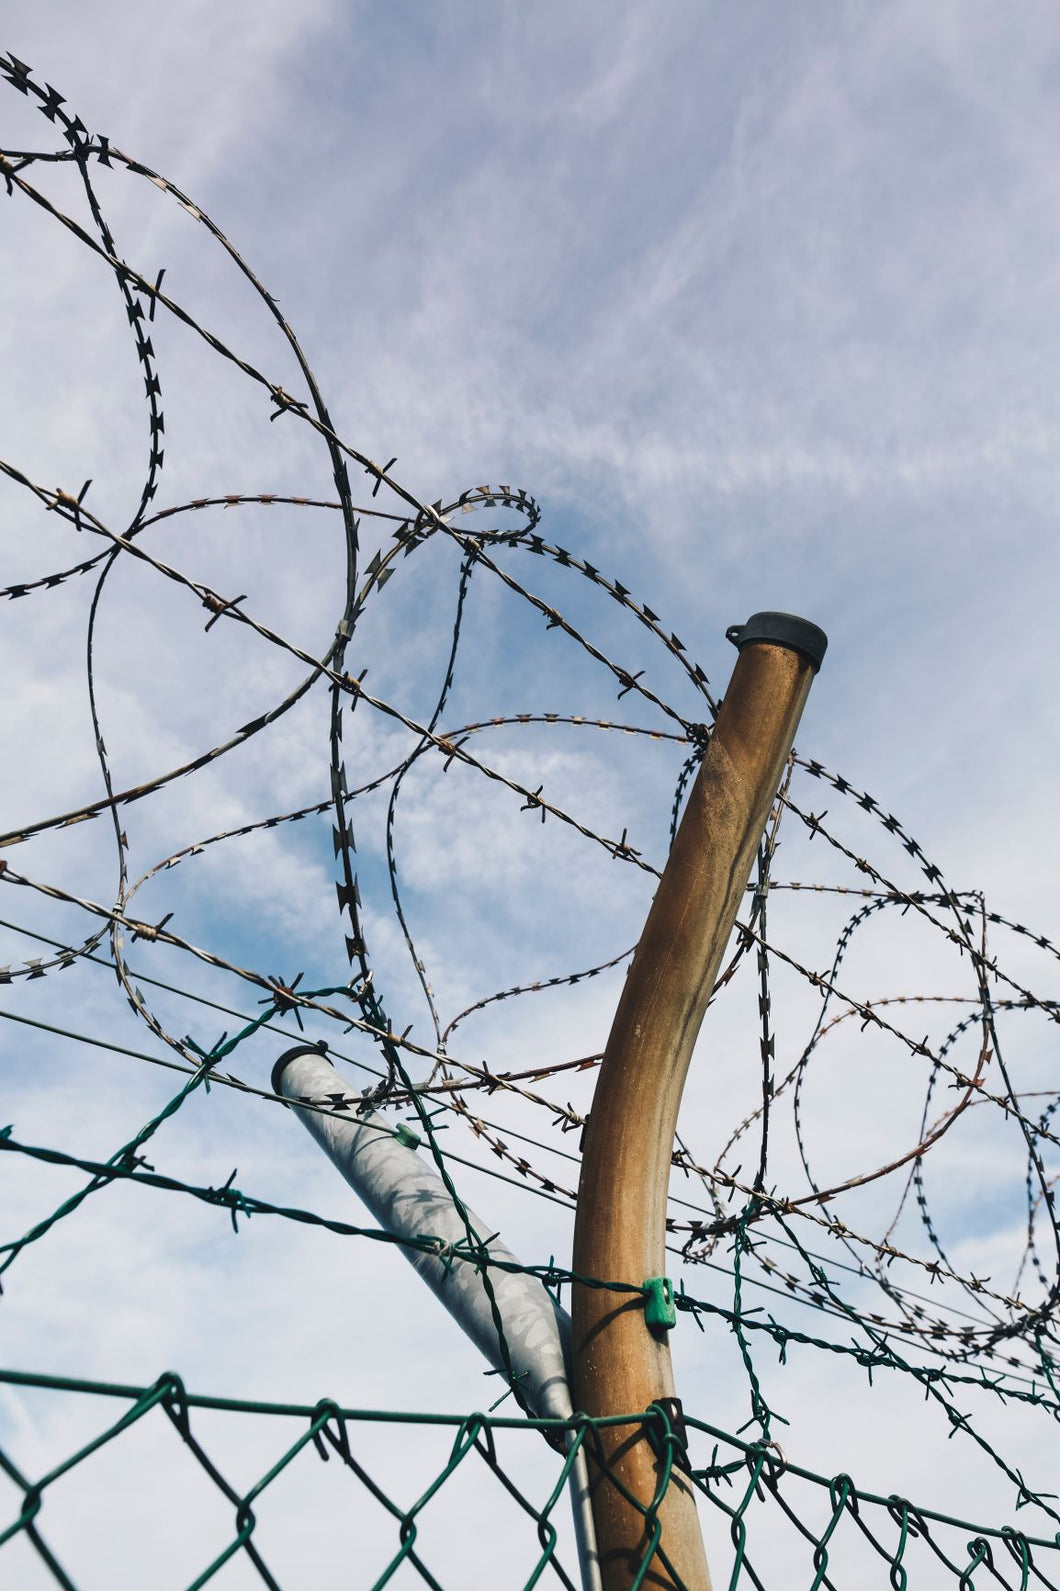 barbed wire Photo by Markus Spiske on Unsplash